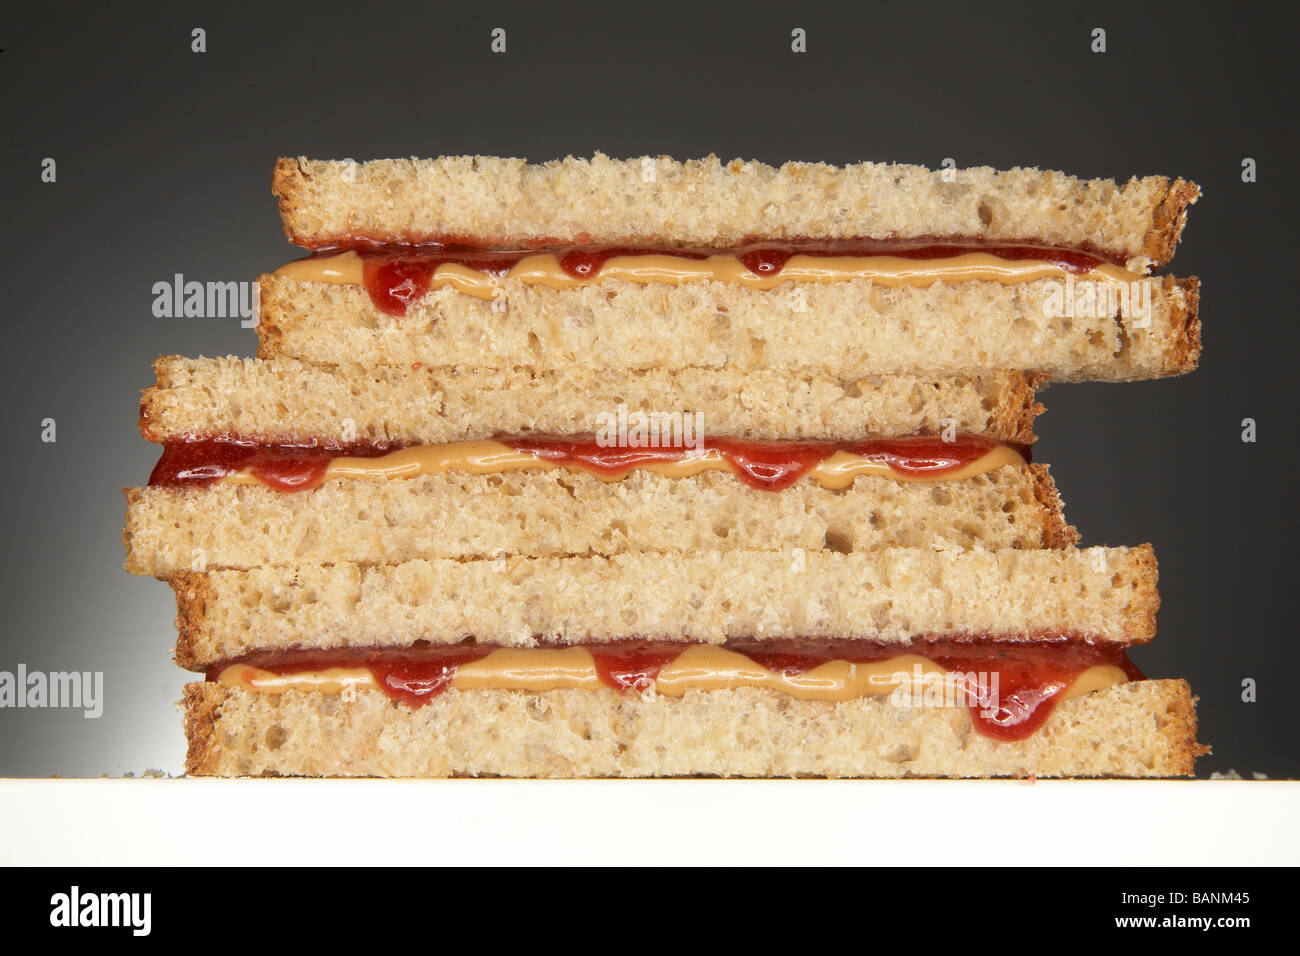 Burro di arachidi e gelatina panino su sfondo grigio Foto Stock